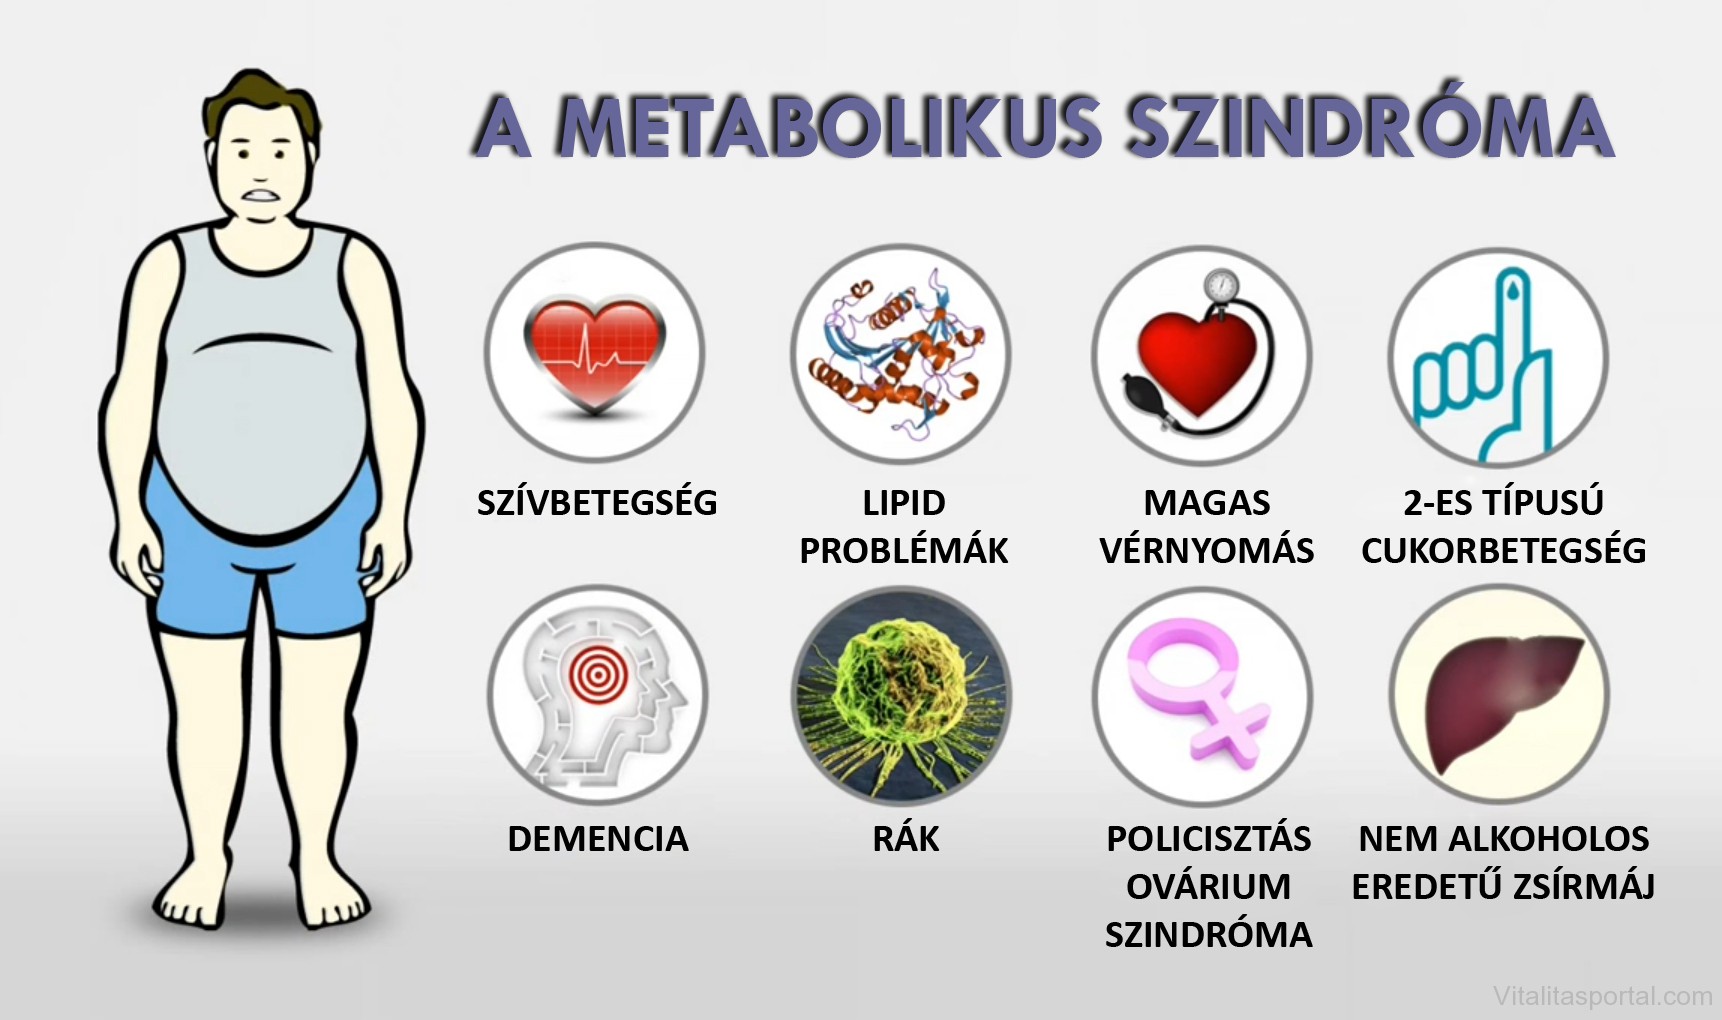 Metabolikus szindróma - Vajon Ön ebben szenved? - Mi a panasza?